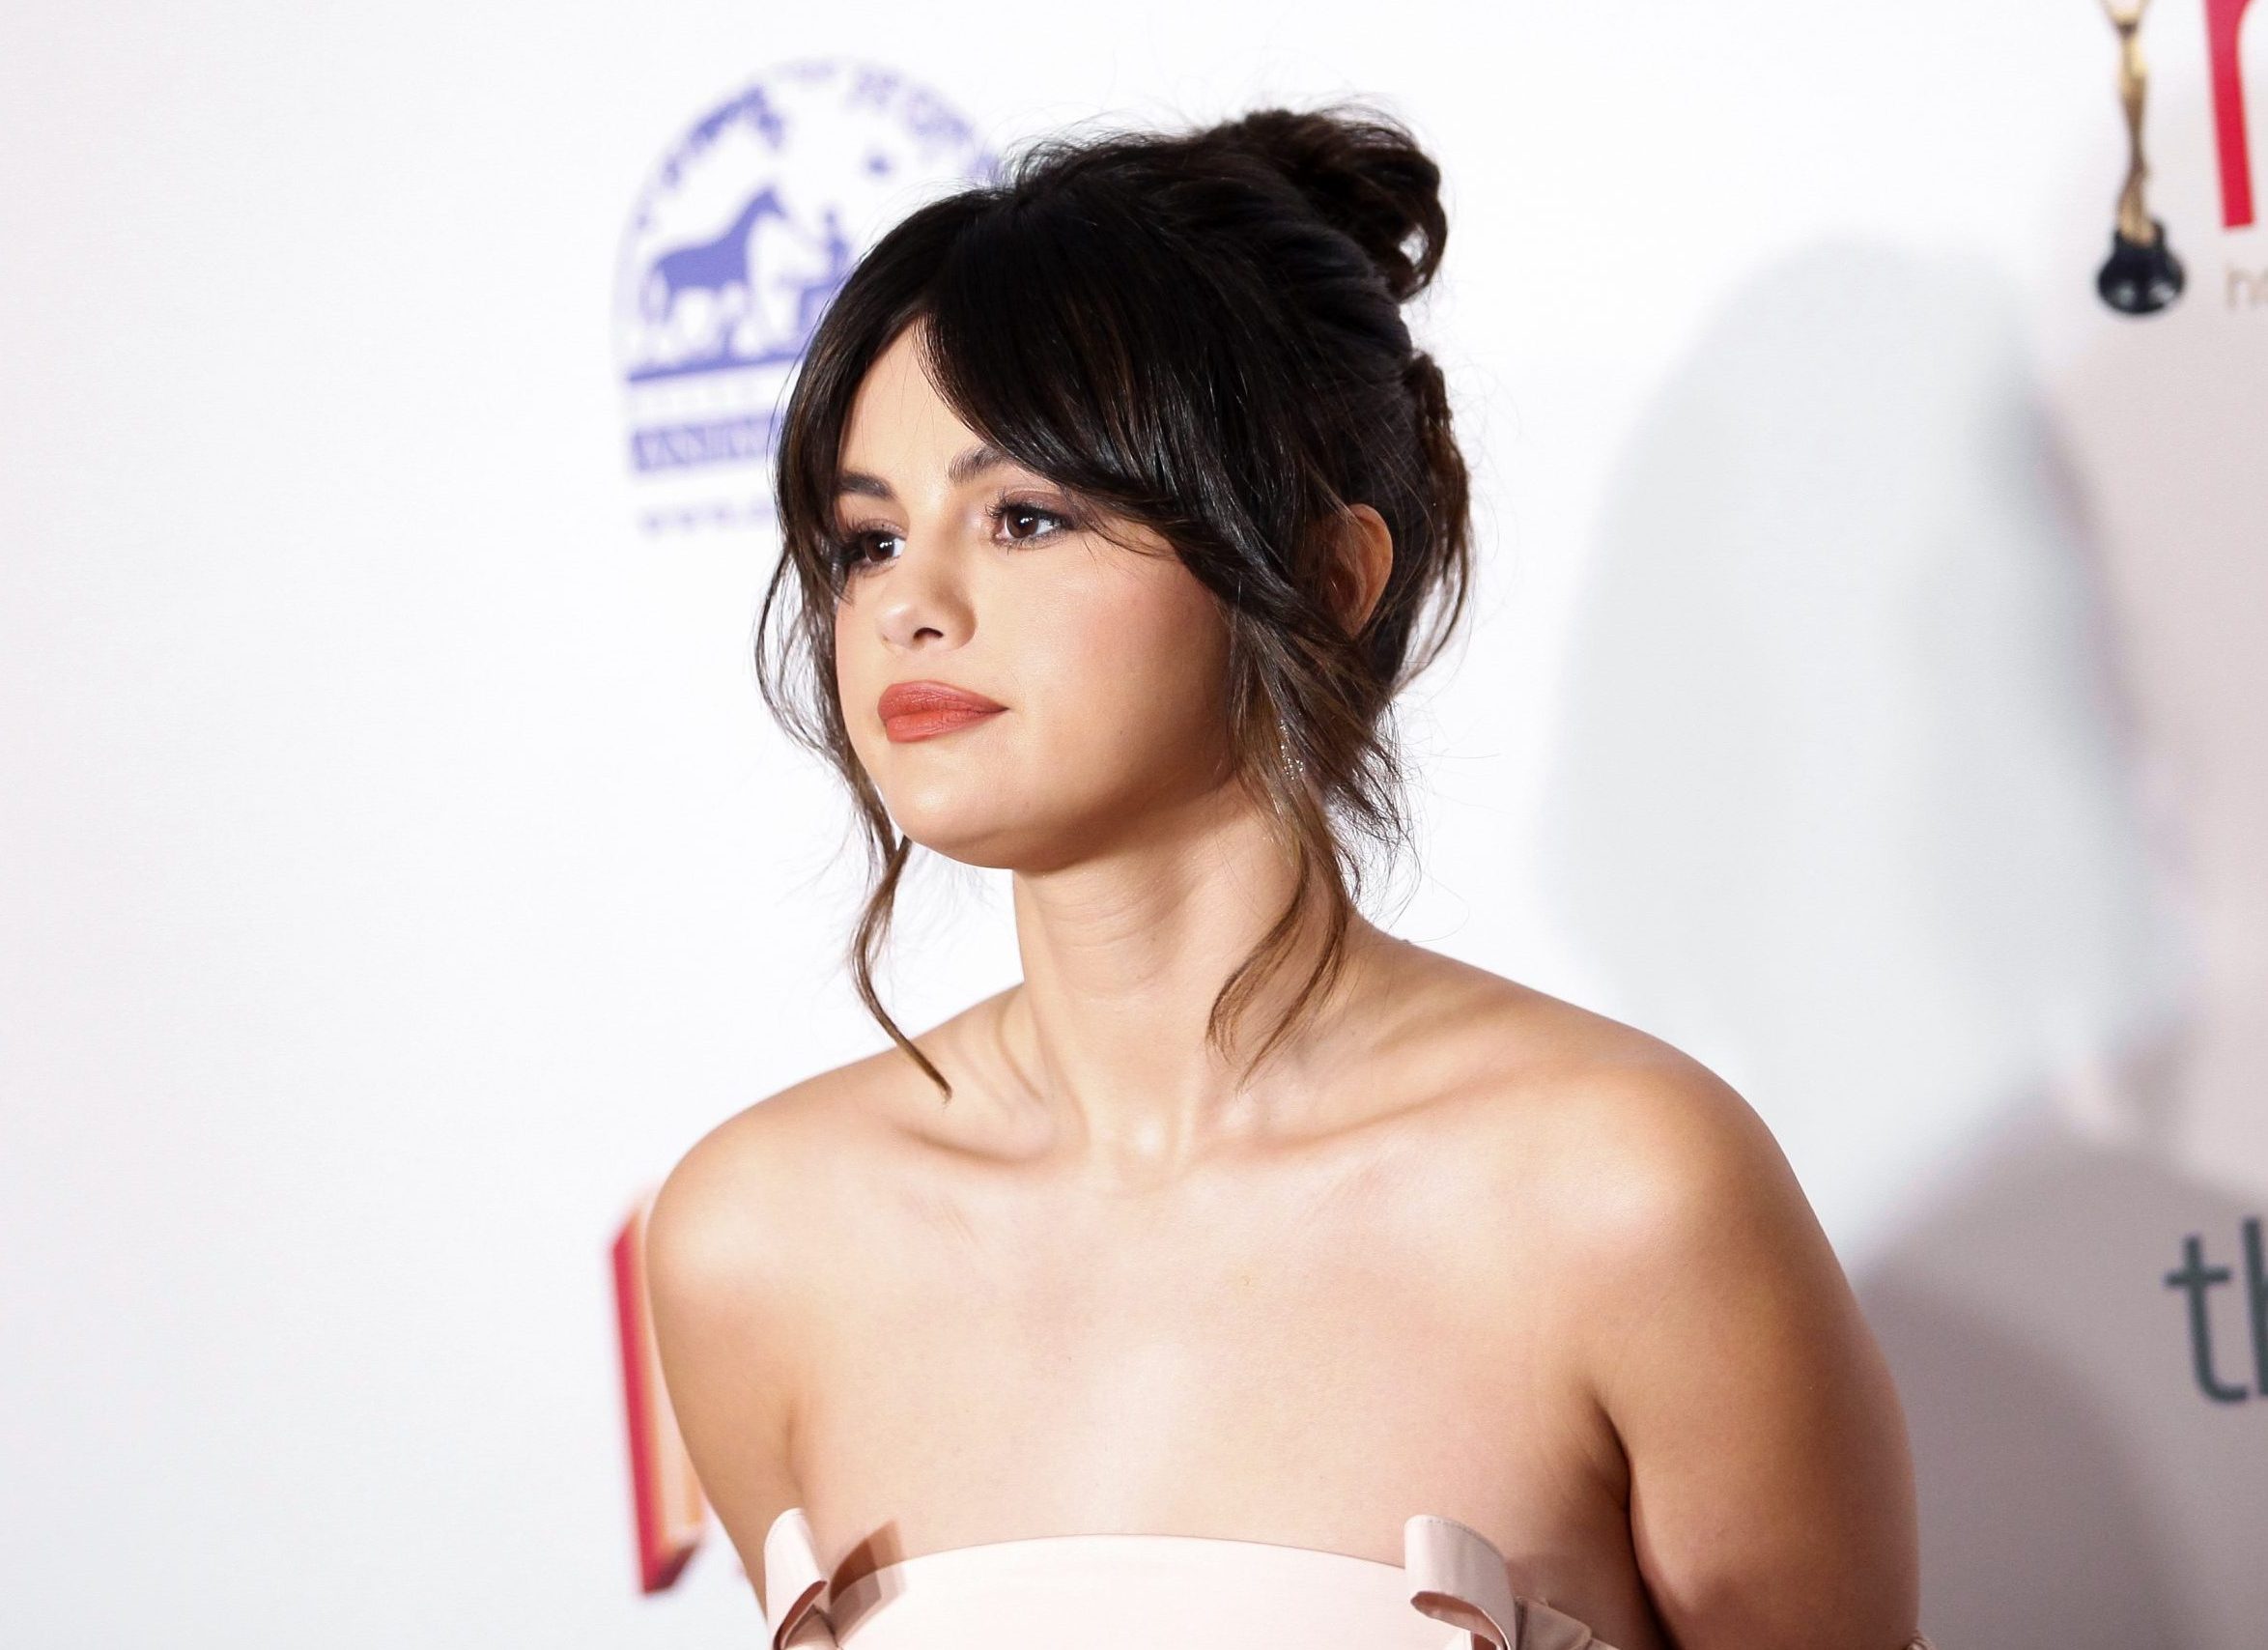 Το μυστικό πίσω από την διακριτική sunkissed επιδερμίδα της Selena Gomez